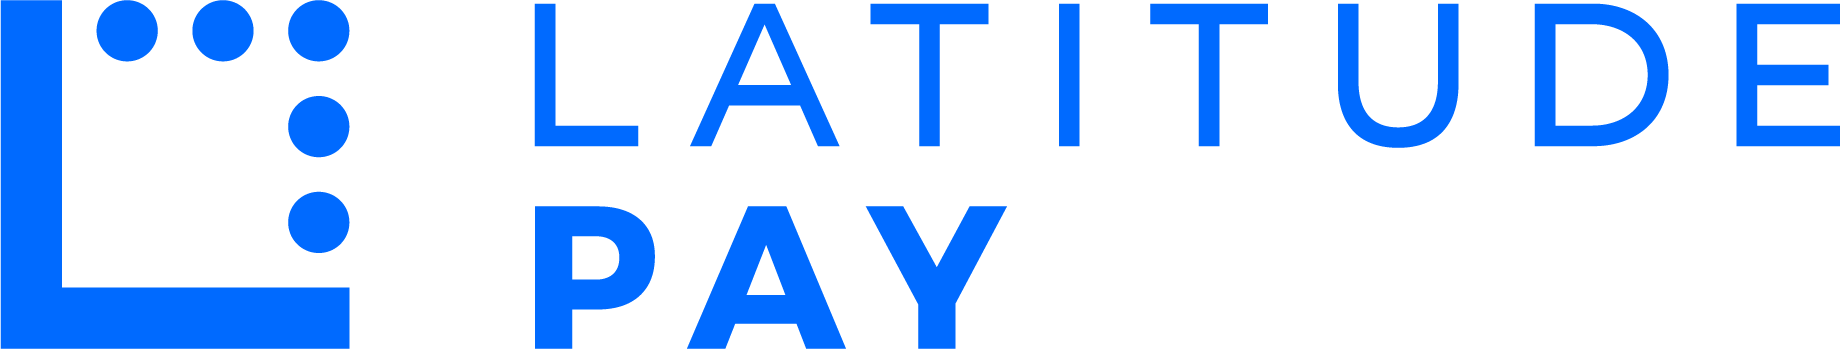 LatitudePay_Logo_Stacked_Blue_RGB